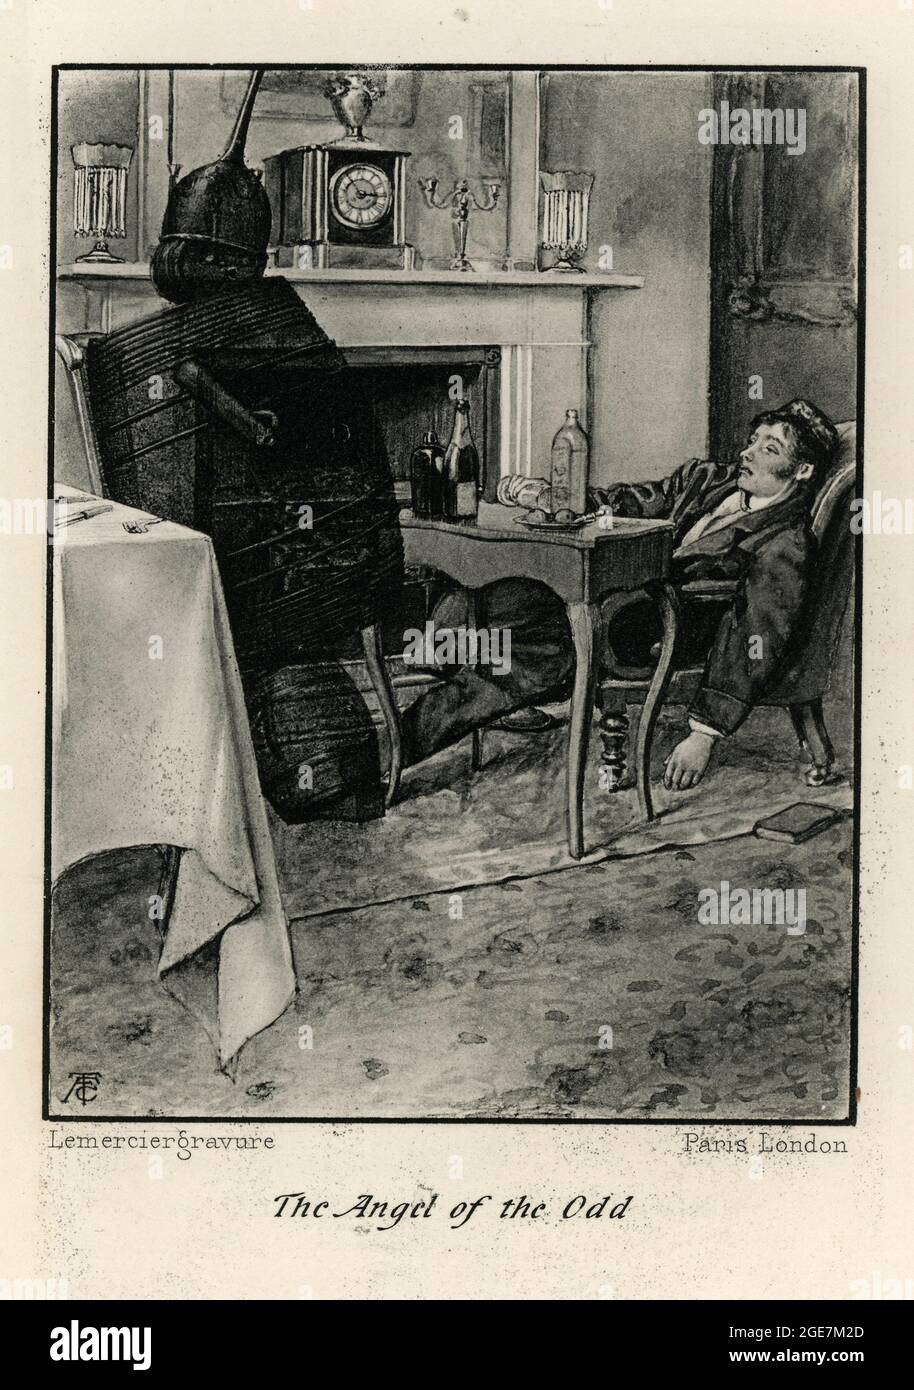 Illustration vintage de l'Ange de l'Odd par Edgar Allan PoE. Un homme ivre s'est mis à sommer dans une chaise Banque D'Images